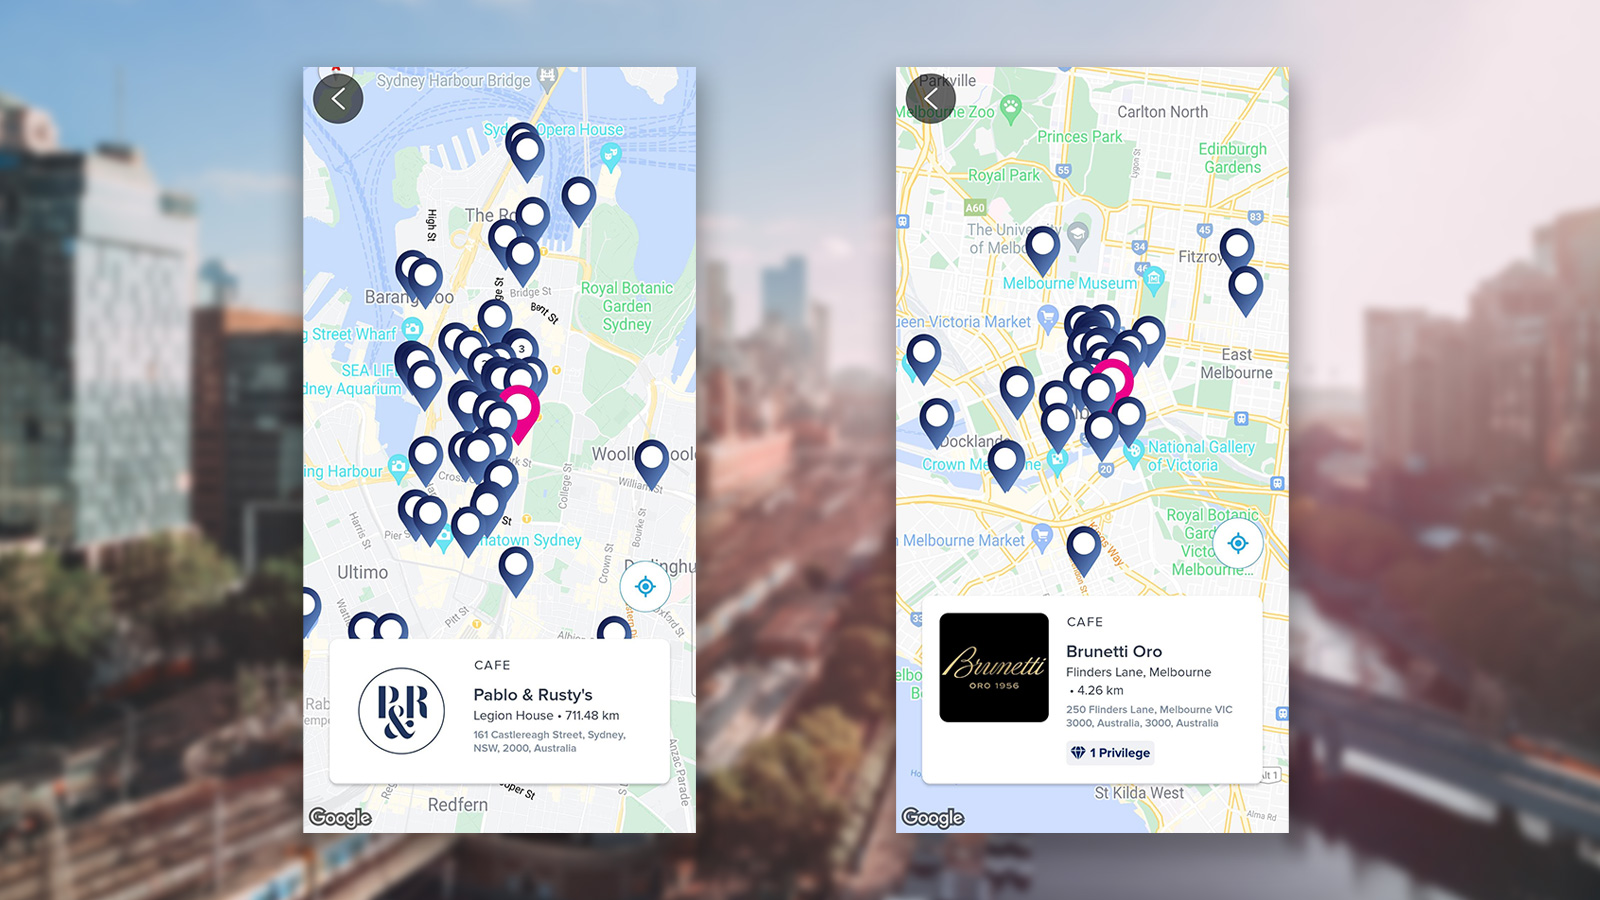 Kris+ app locations in Australia